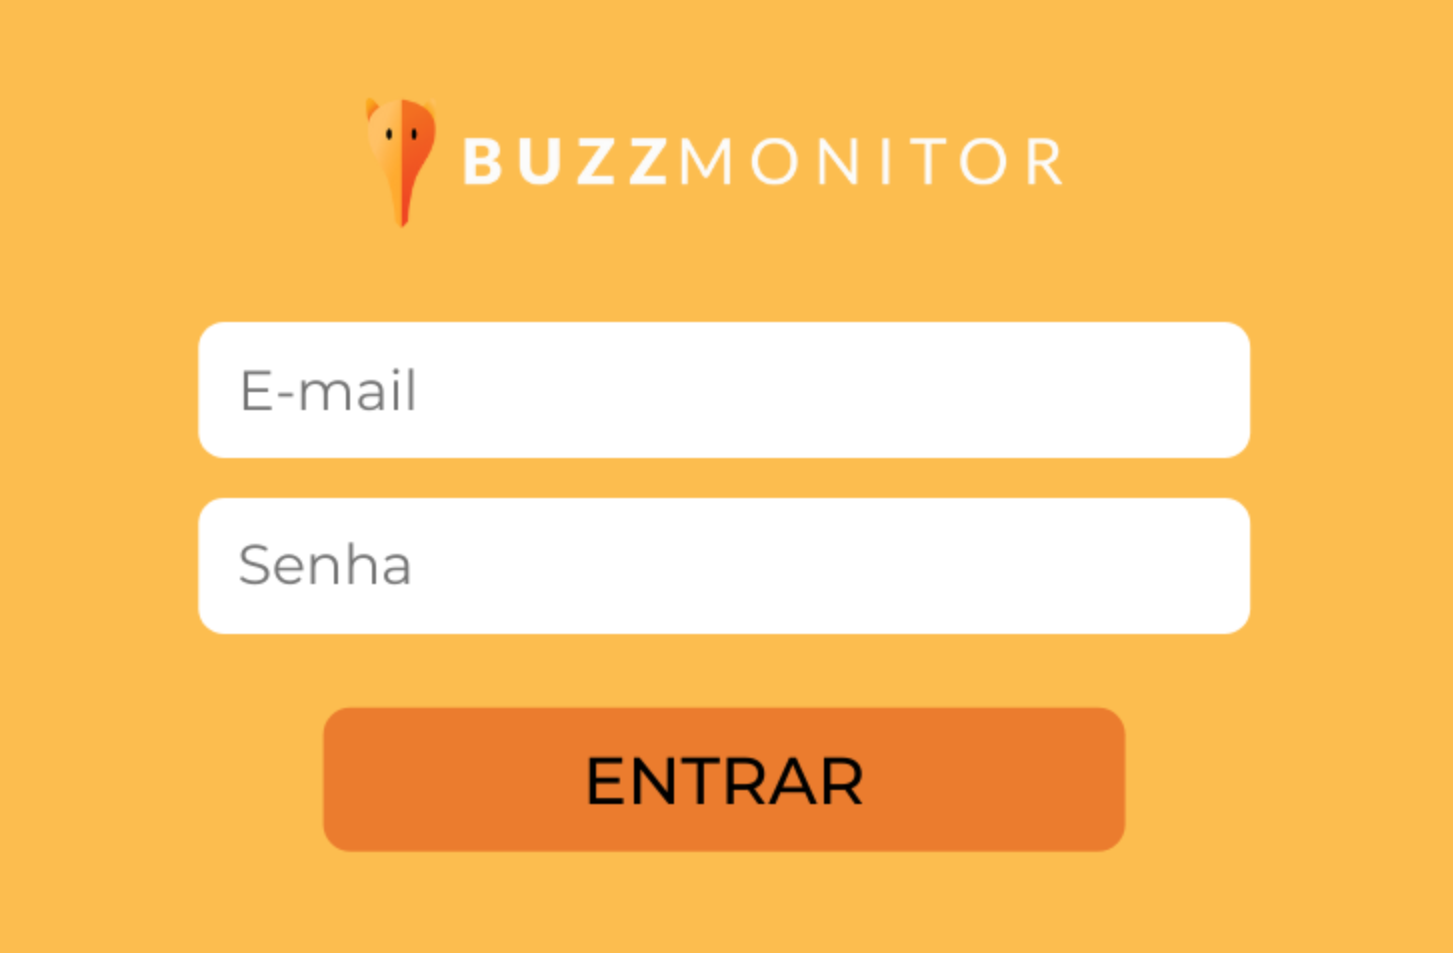 2 dicas de segurança no login da Buzzmonitor